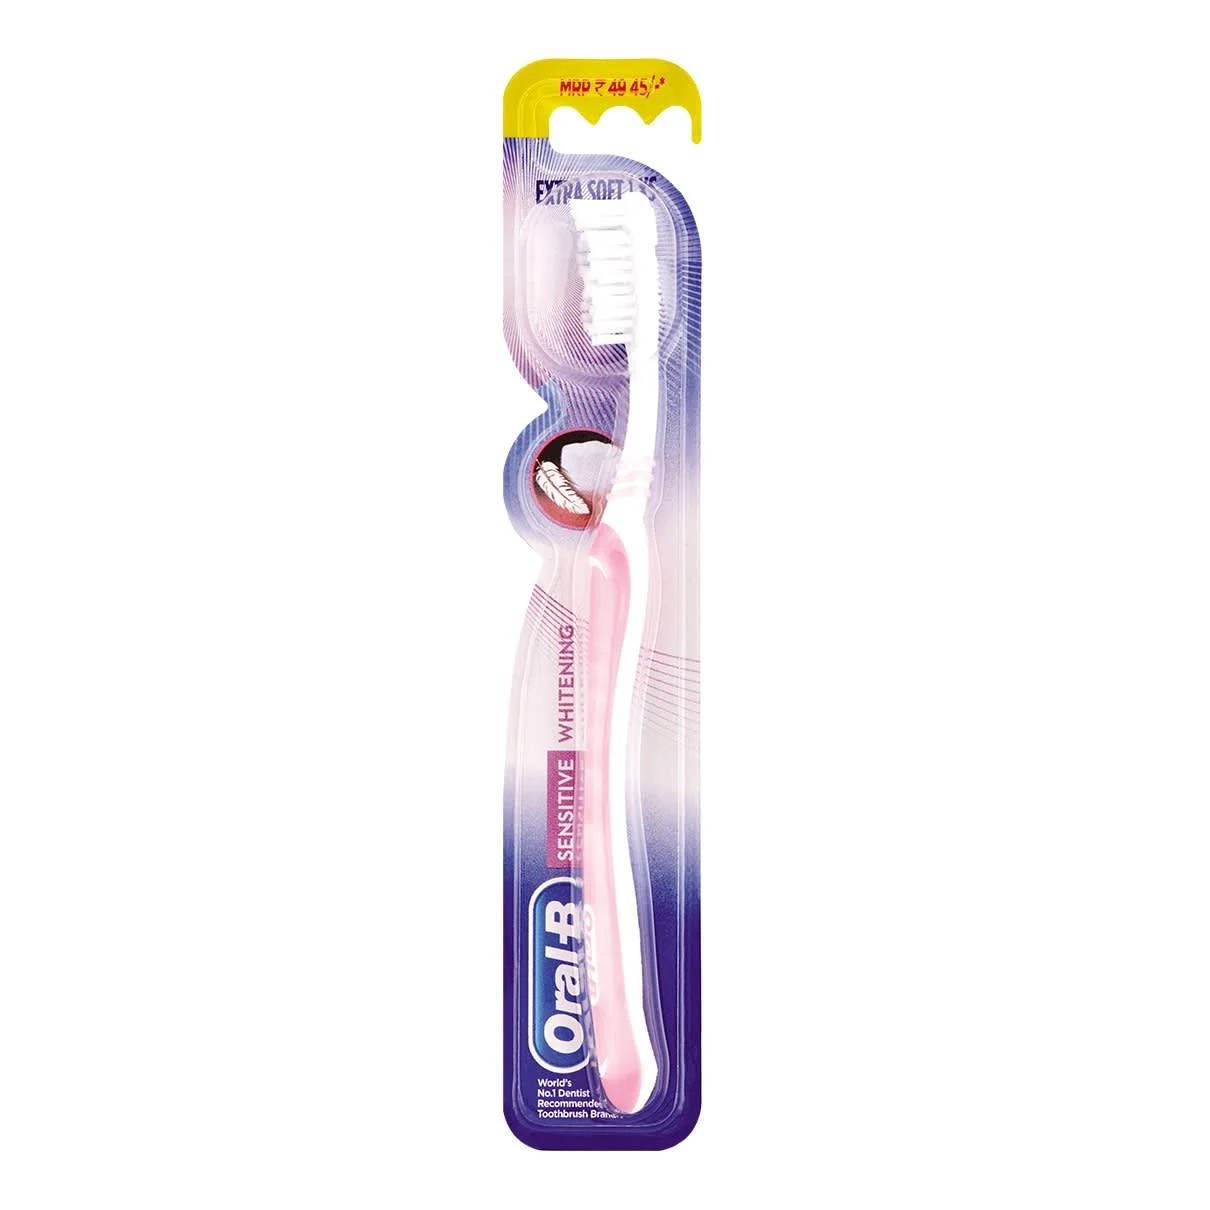 Image - Oral-B Sensitive Whitening Toothbrush -Main 